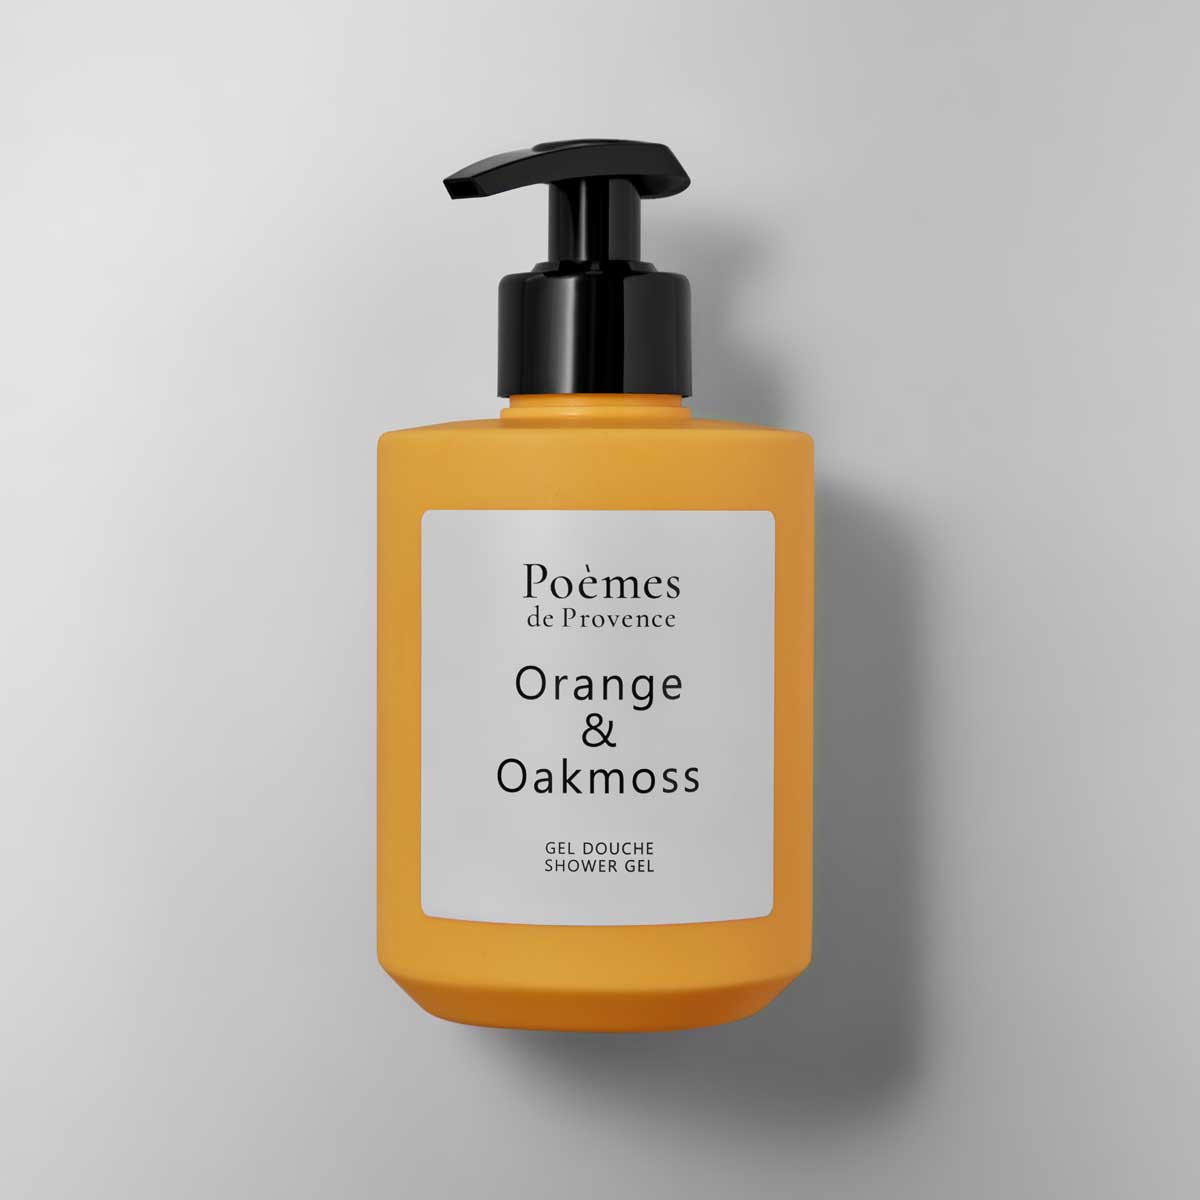 Гель для душа Poemes de Provence ORANGE & OAKMOSS гель для душа витаминный заряд 200мл